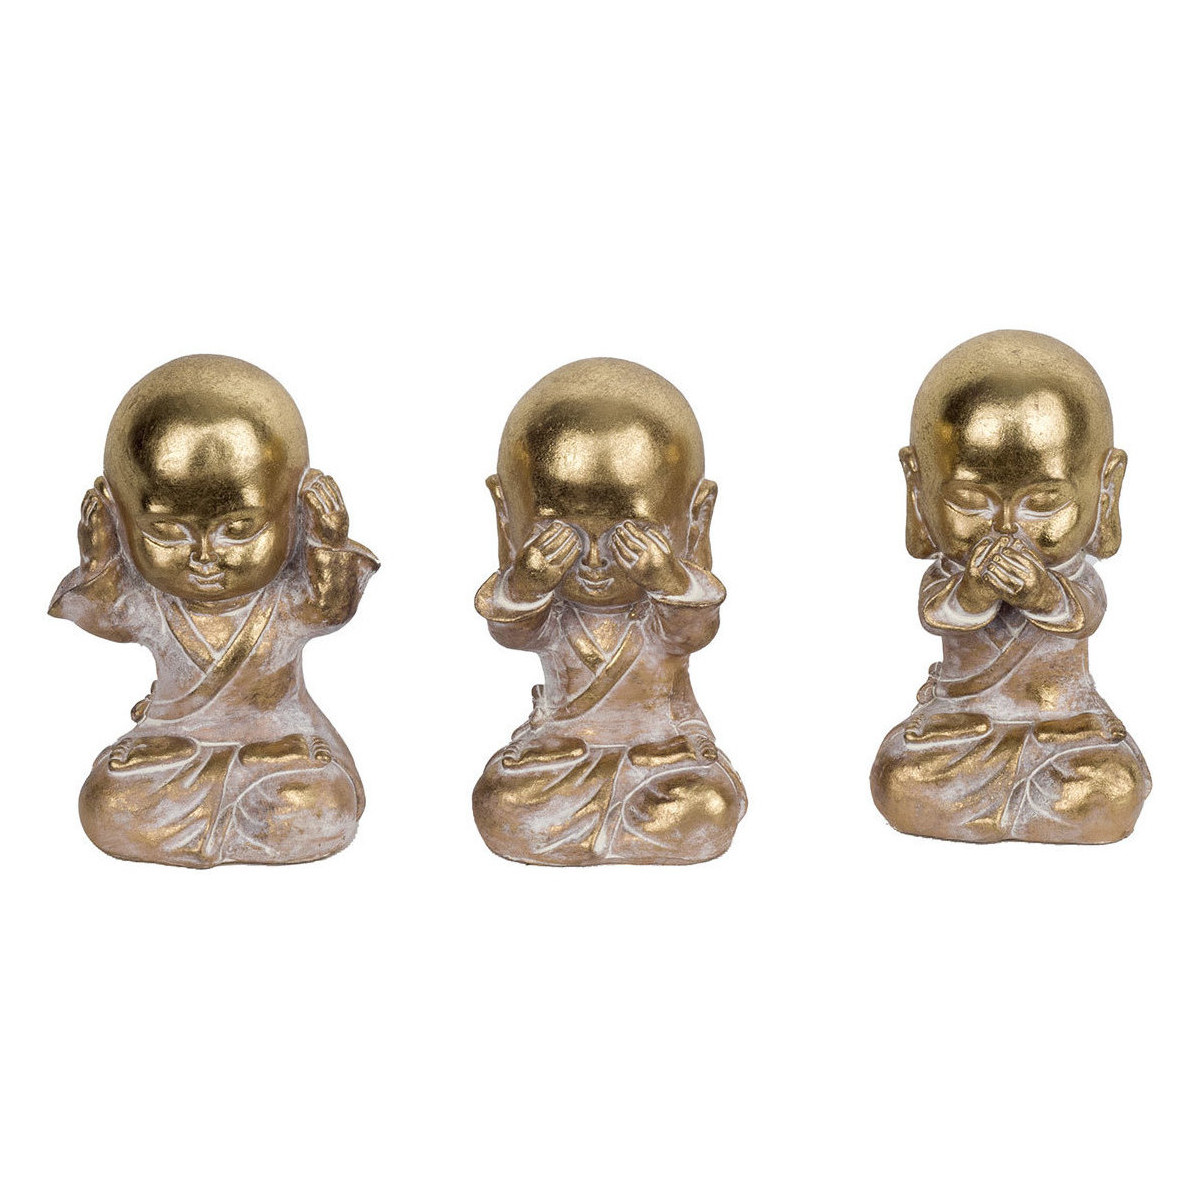 Σπίτι Αγαλματίδια και  Signes Grimalt Σχήμα Monk 3 Μονάδες Gold